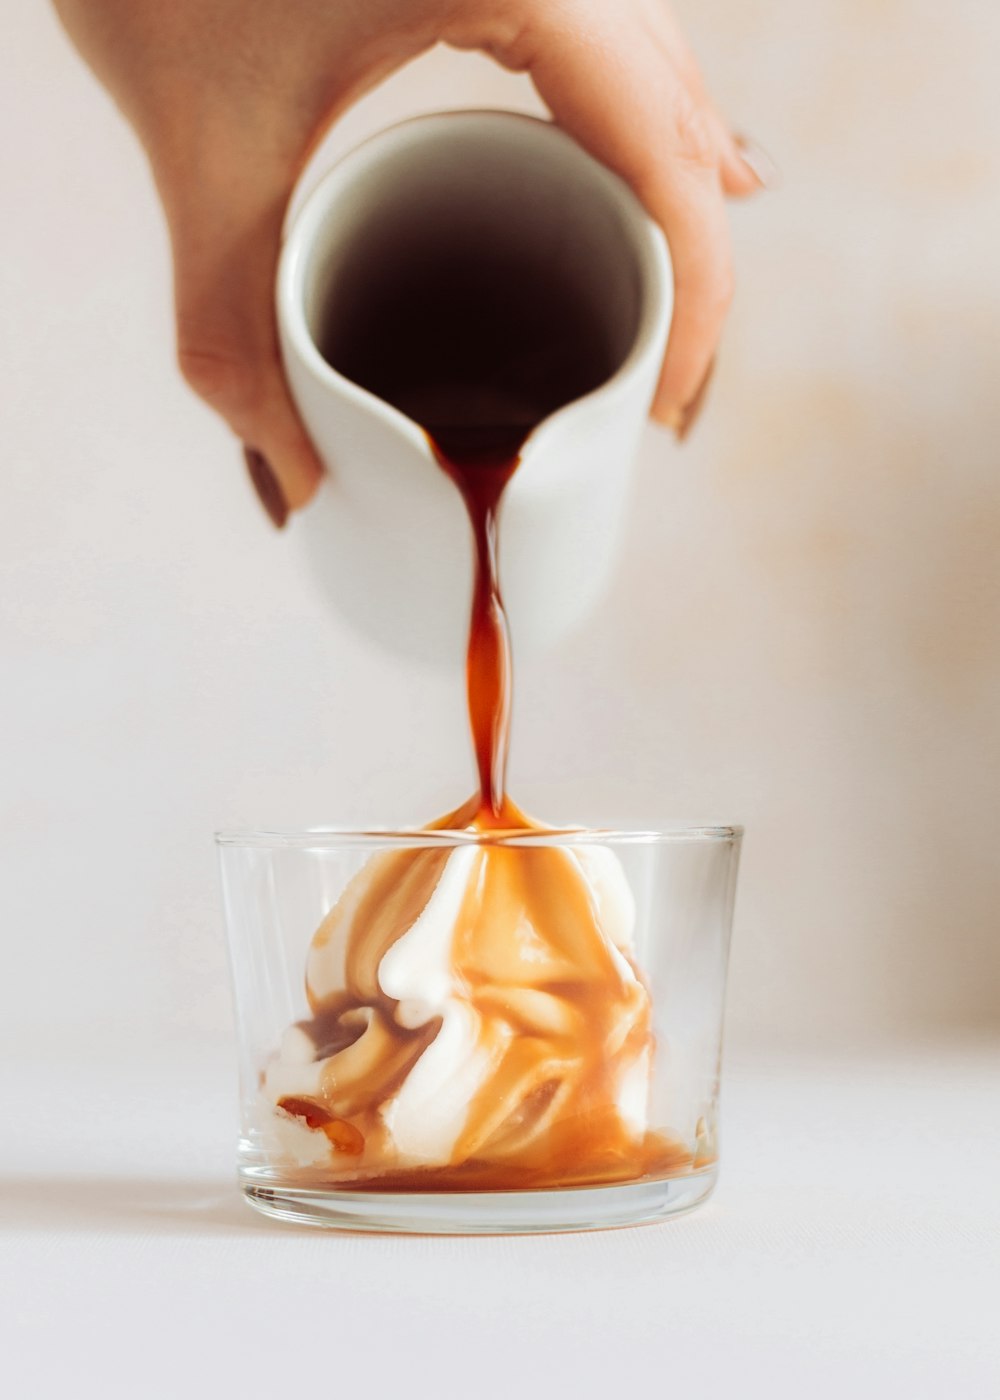 Una persona vertiendo salsa de caramelo en un vaso